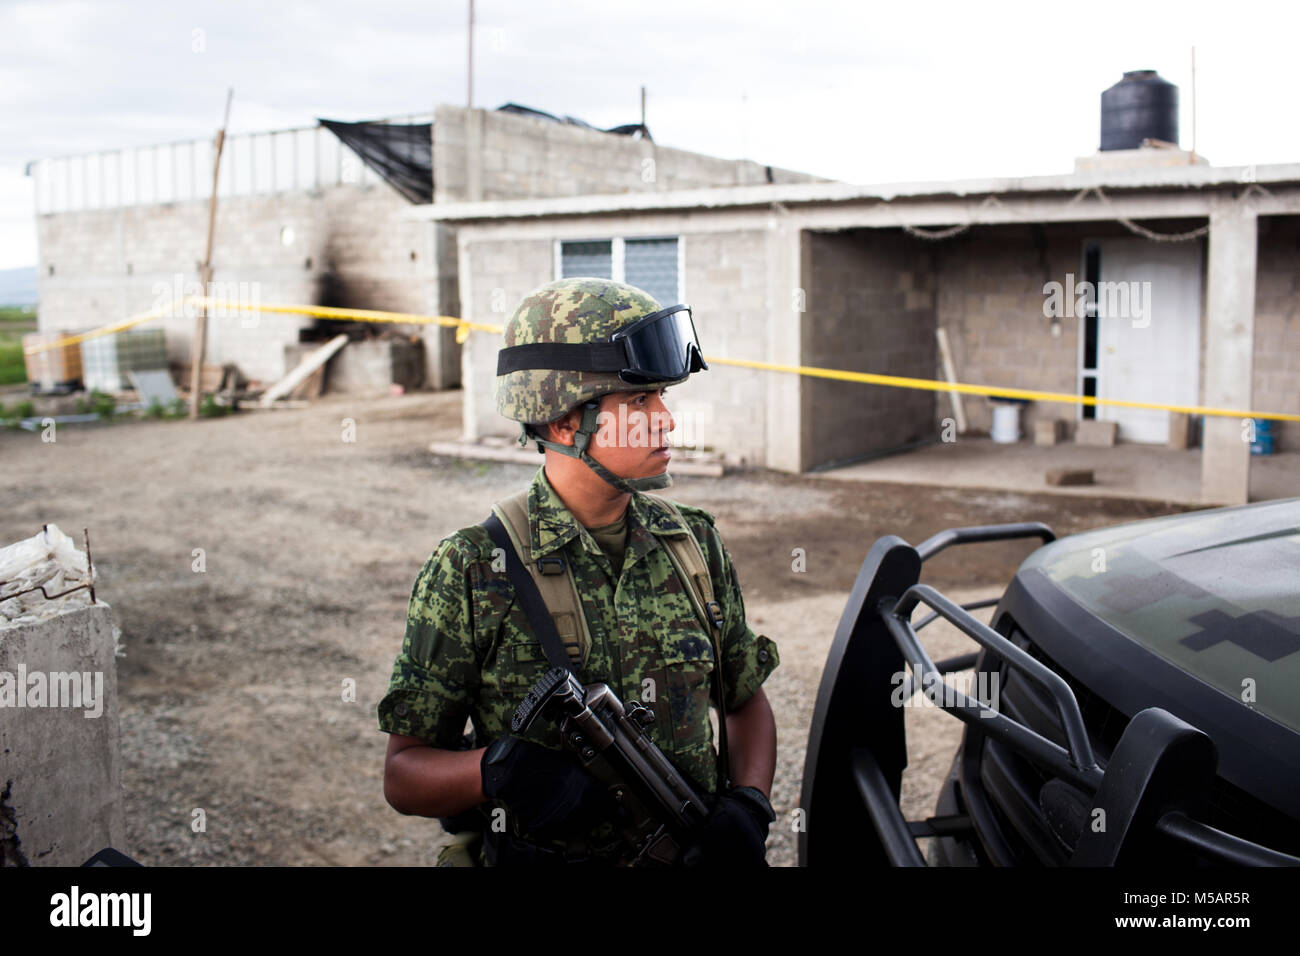 Un soldat de l'armée mexicaine garde une petite ferme maison qui a été utilisé par Joaquin "El Chapo" Guzman pour échapper à la prison de l'Altiplano près de Toluca, Mexique le dimanche 12 juillet 2015. Le célèbre chef du cartel Joaquin "El Chapo" Guzman s'est échappé de cette prison de haute sécurité la nuit d'avant à travers un tunnel. C'est la deuxième fois qu'il a échappé à une prison mexicaine. Banque D'Images